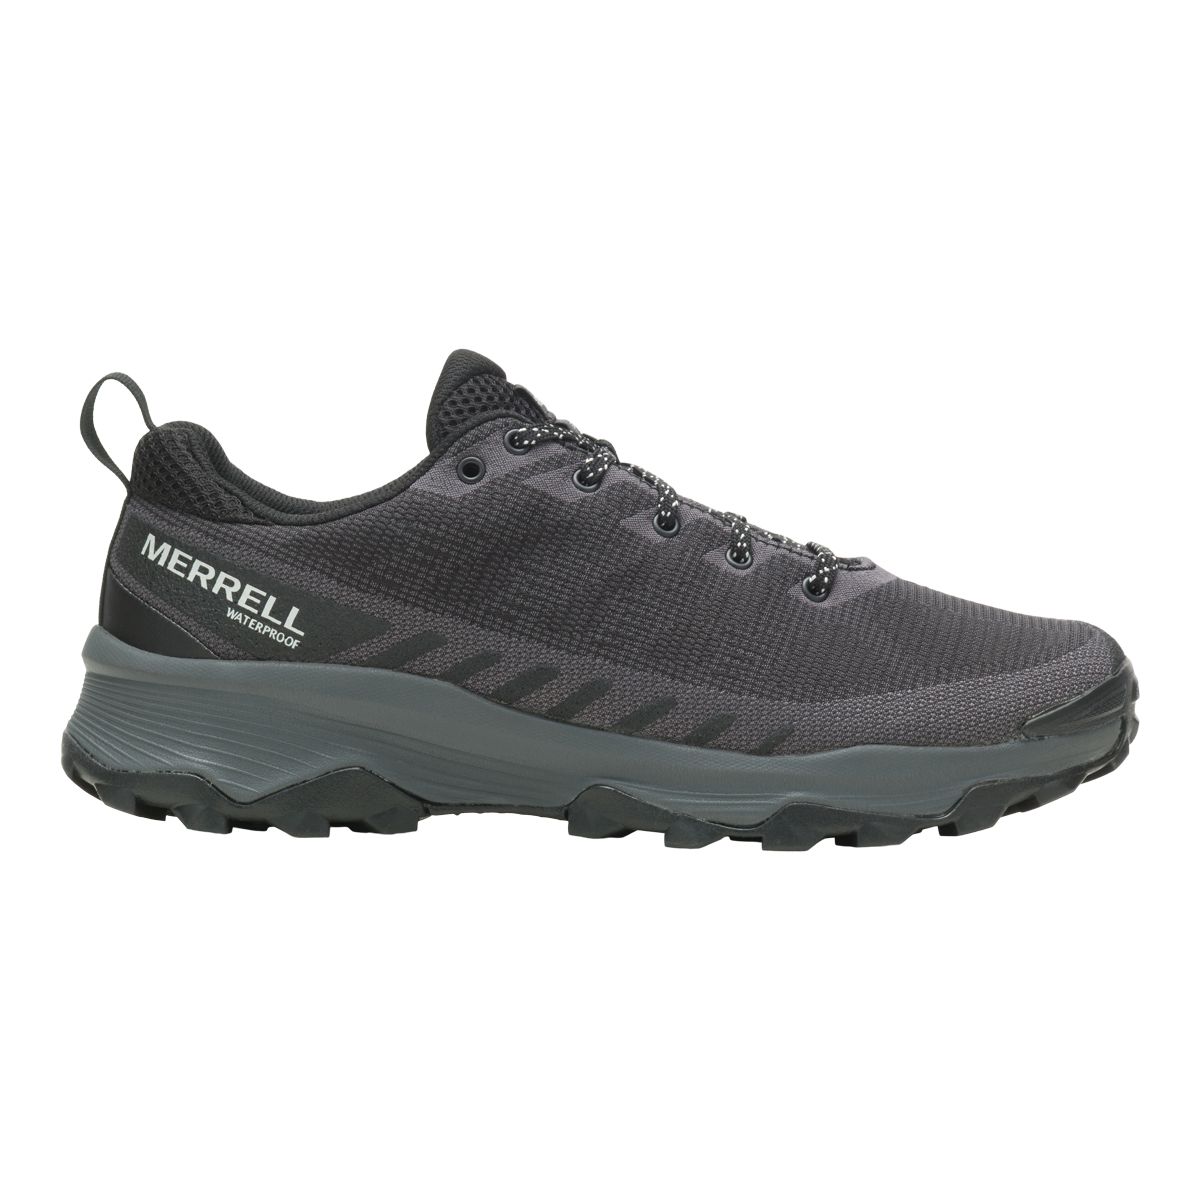 Merrell Men's Speed Eco Waterproof Hiking Shoes